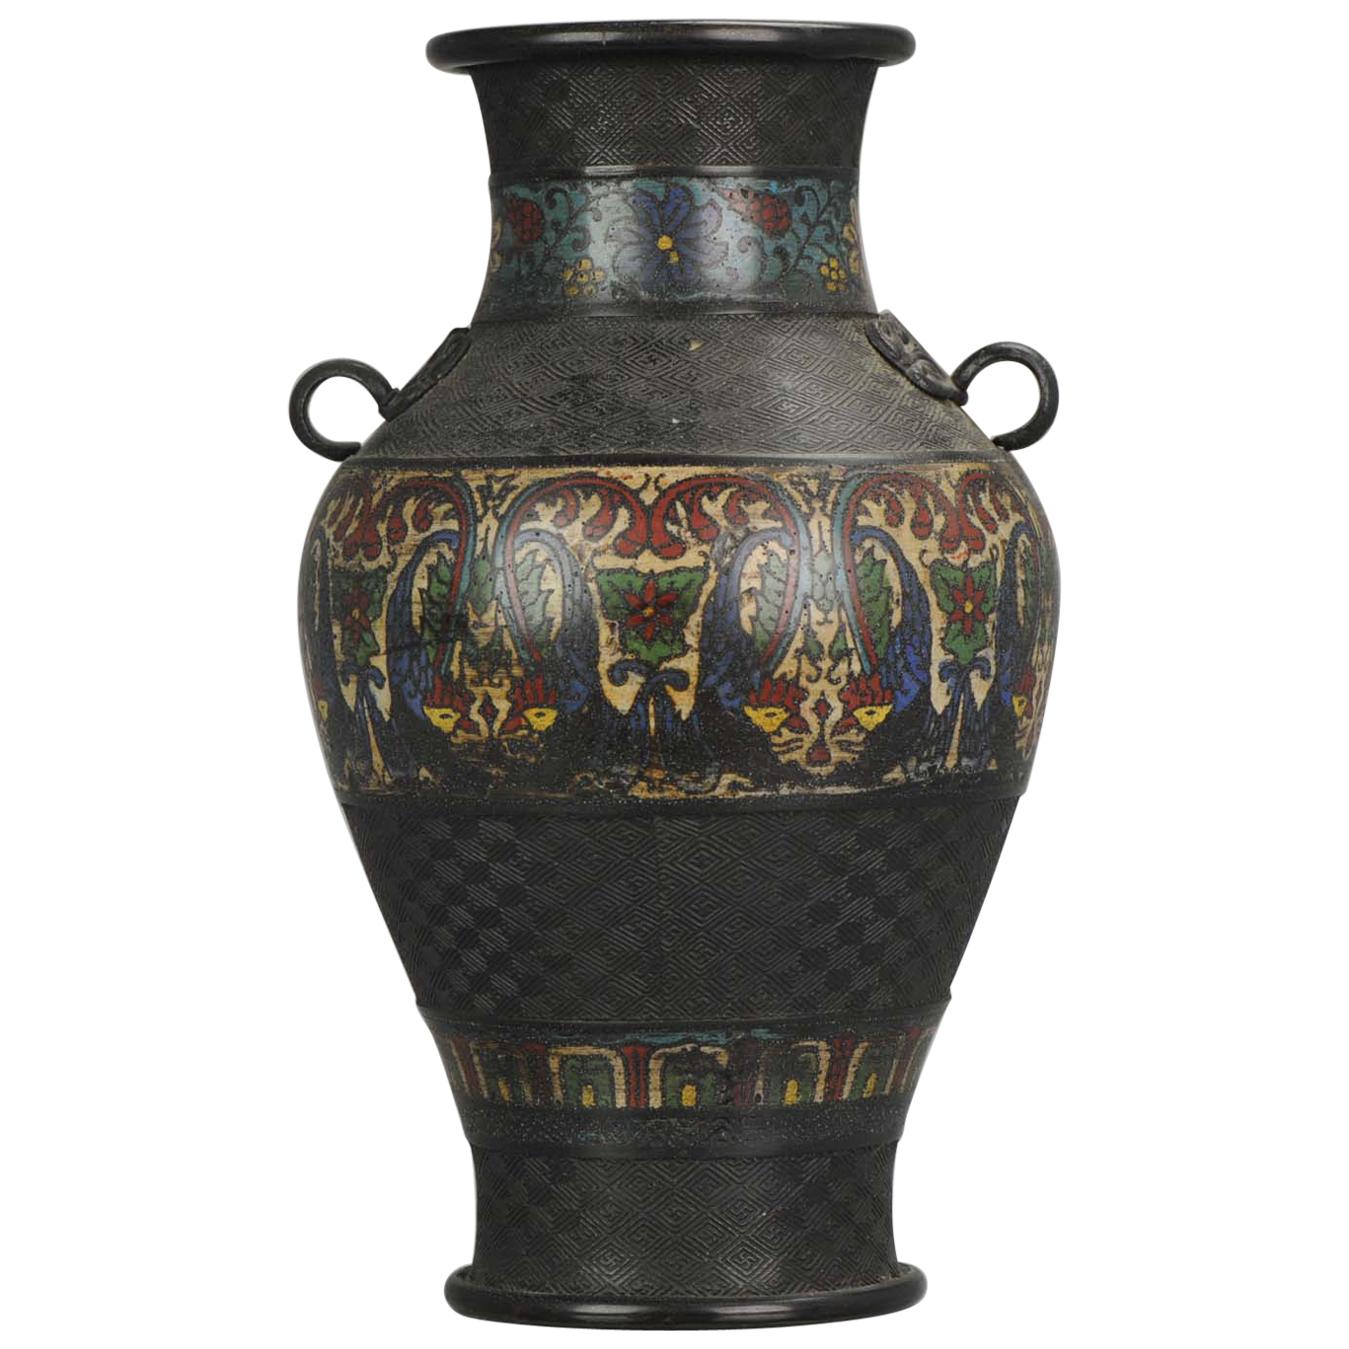 Vase japonais ancien en bronze émaillé, période Edo ou Meiji, Japon